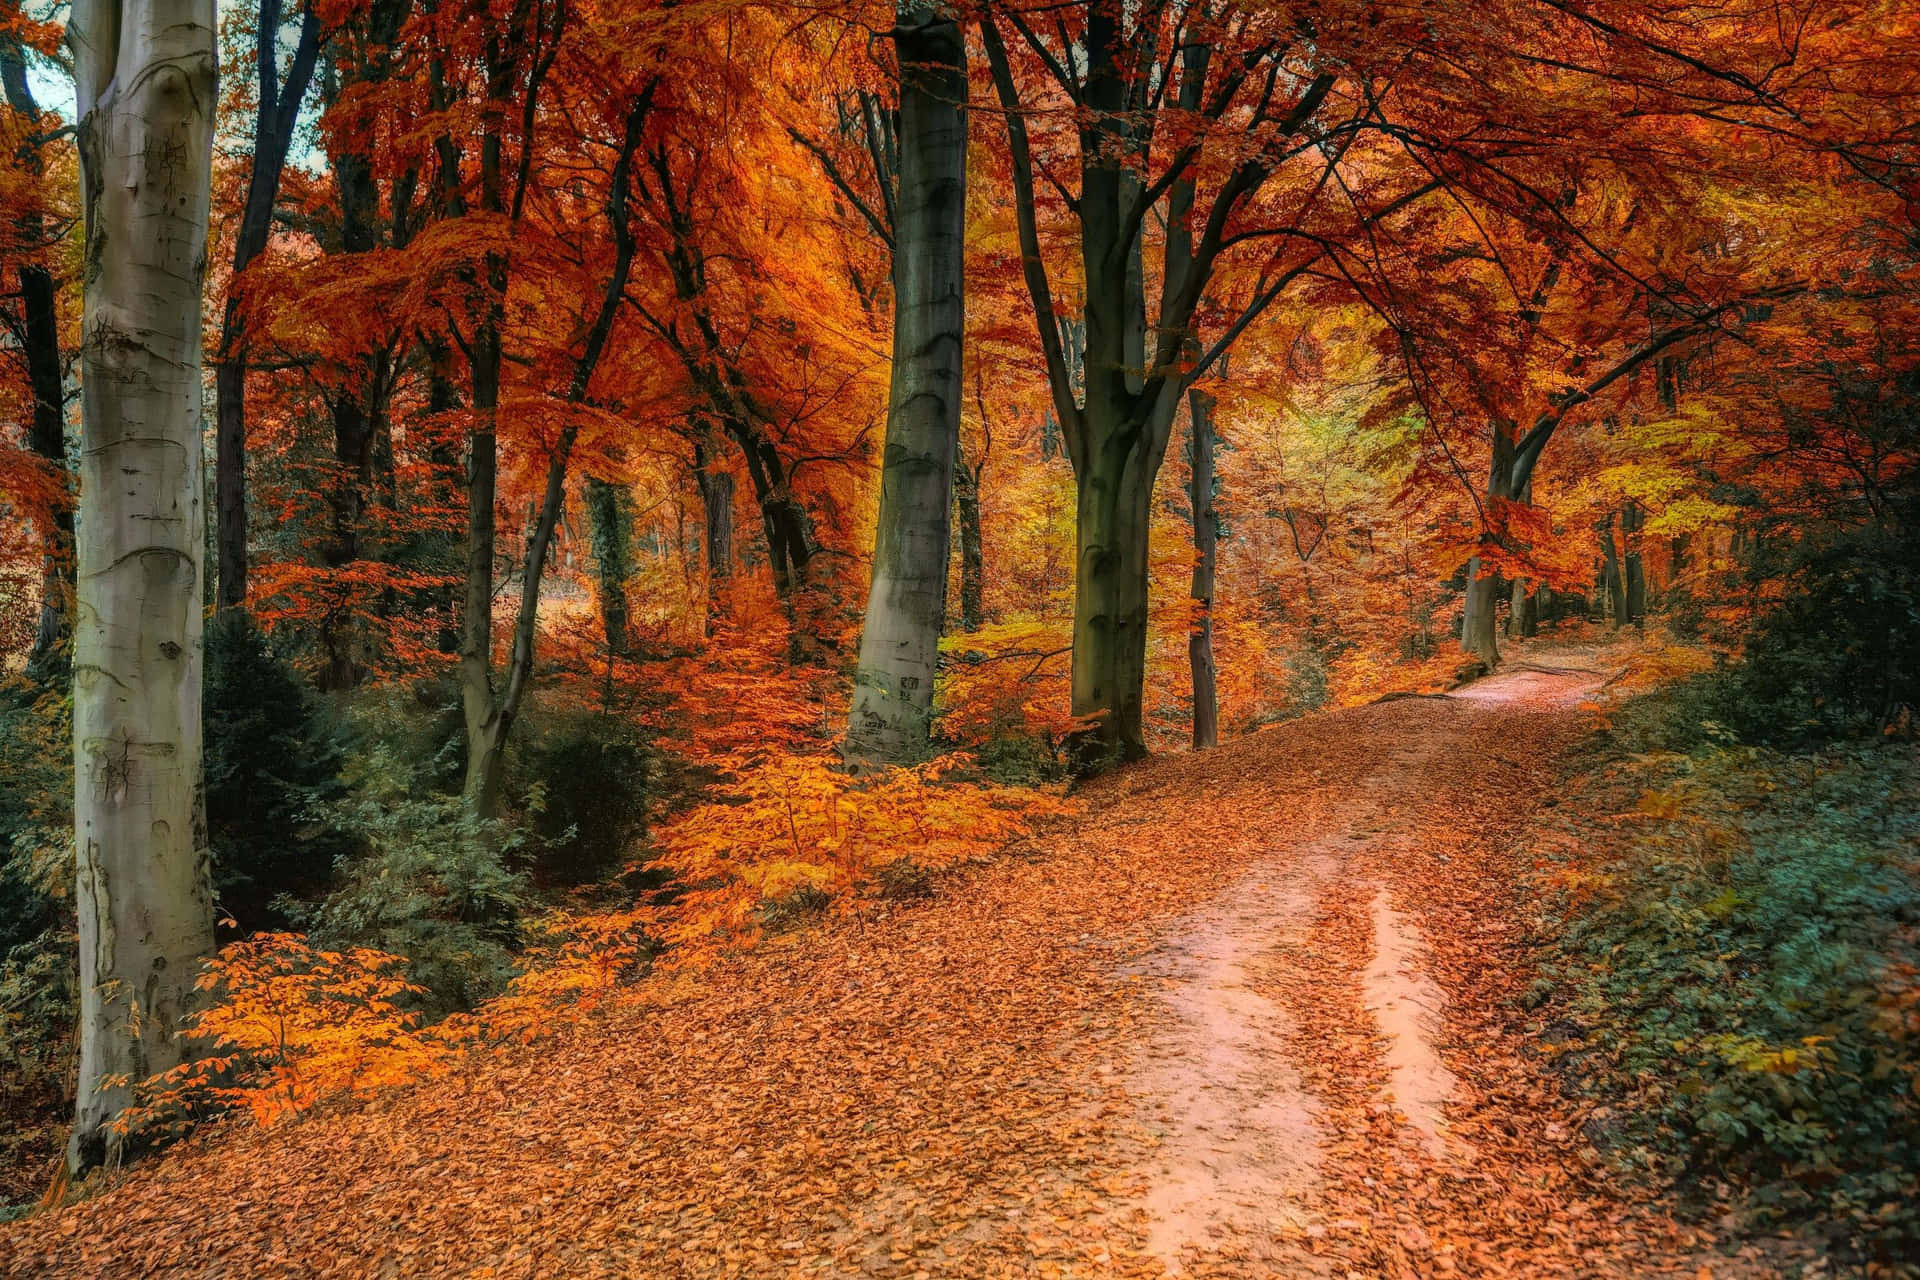 Cenáriode Outono Em Alta Definição Com Folhas Vermelhas E Amarelas. Papel de Parede